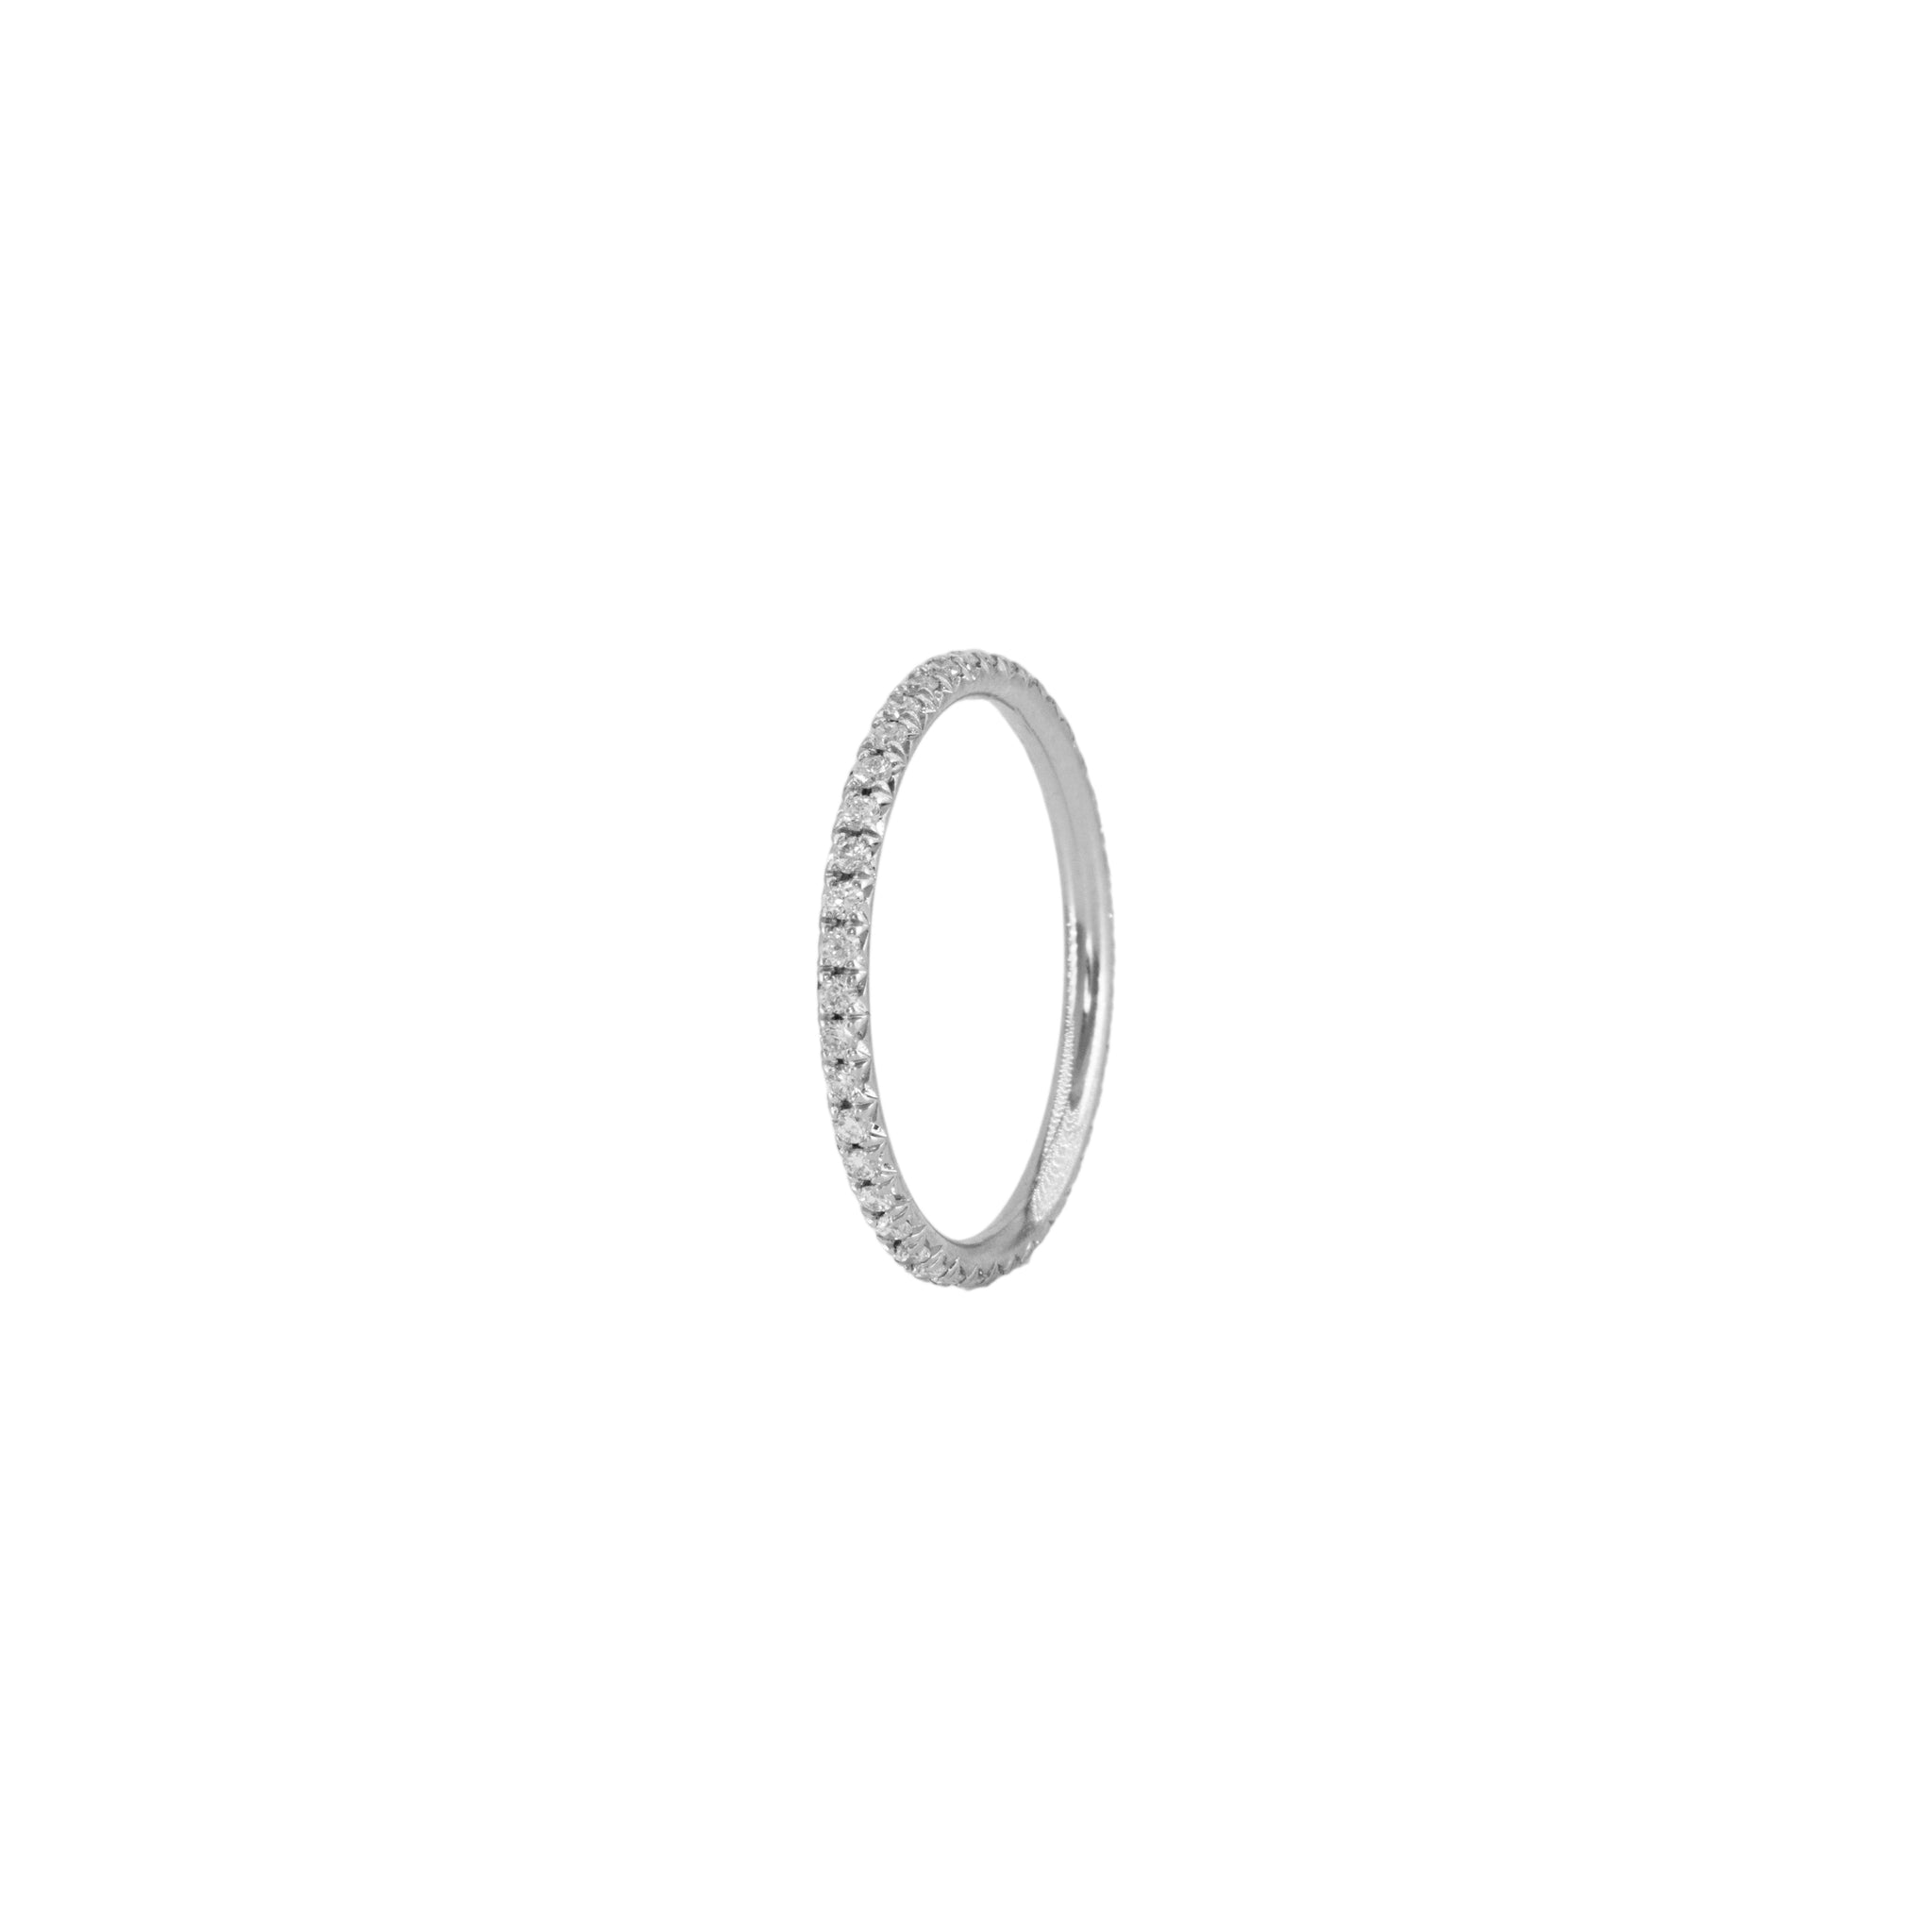 the petite ètoile platinum eternity ring